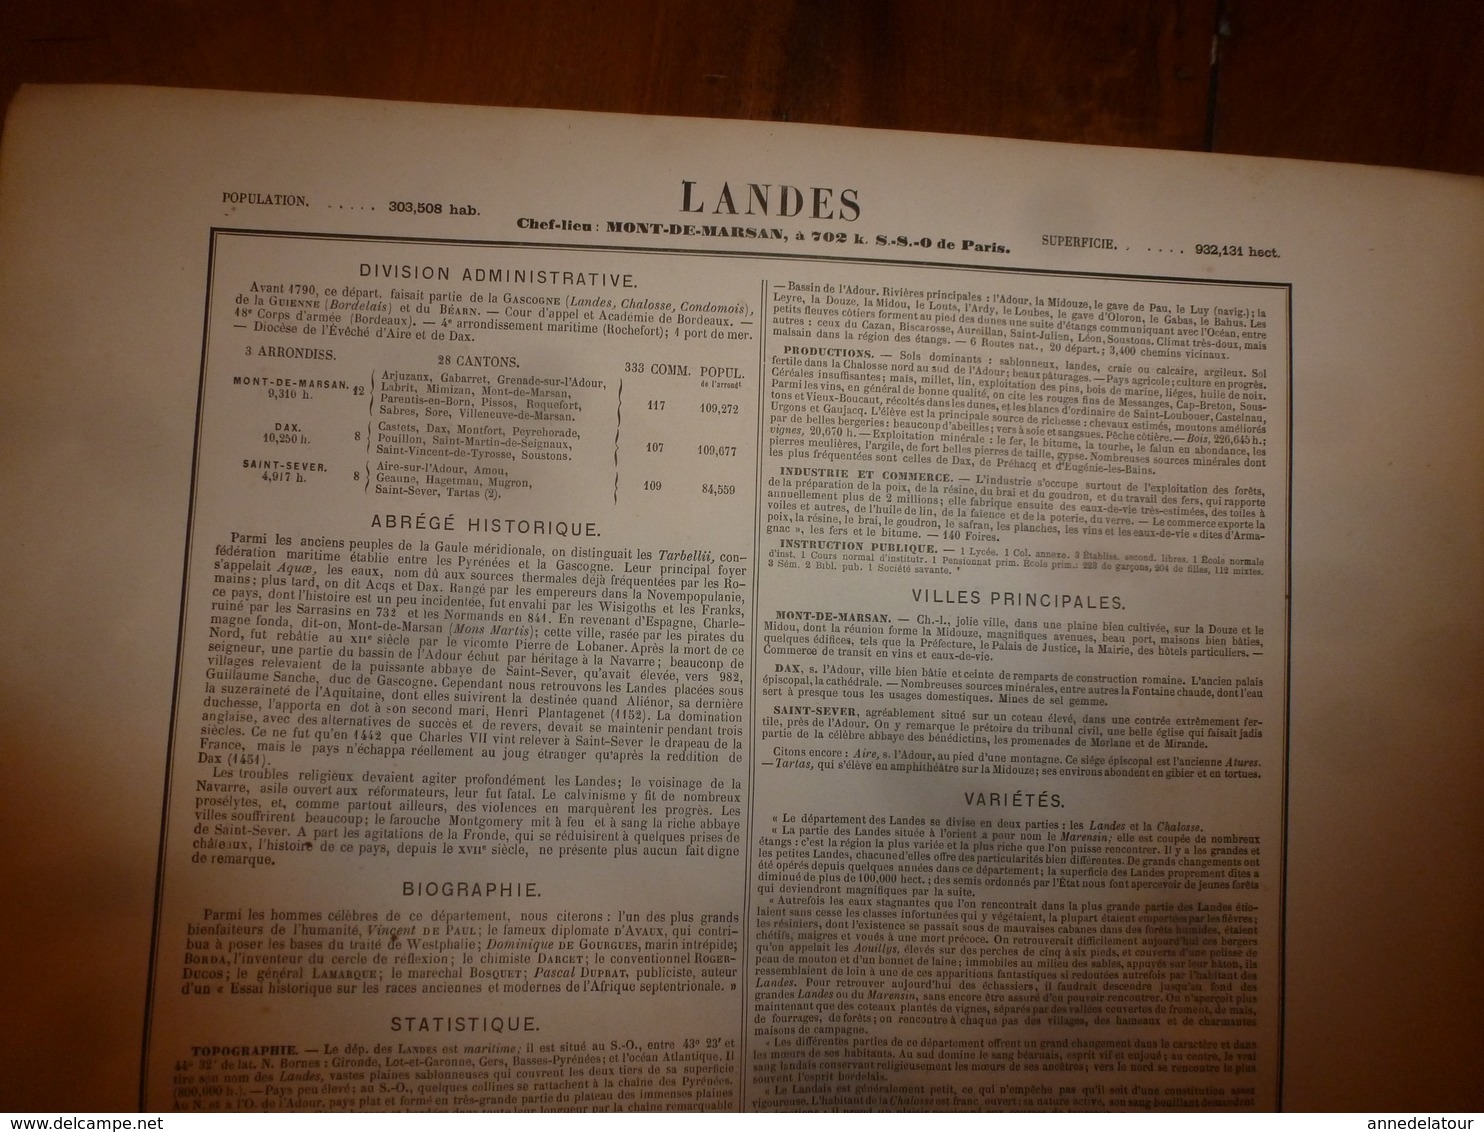 1880:LANDES (Mt-de-Marsan,Dax,St-Sever,Amou,Tartas,Labrit,Mimizan,etc) Carte Géo-Descriptive en taille douce par Migeon.